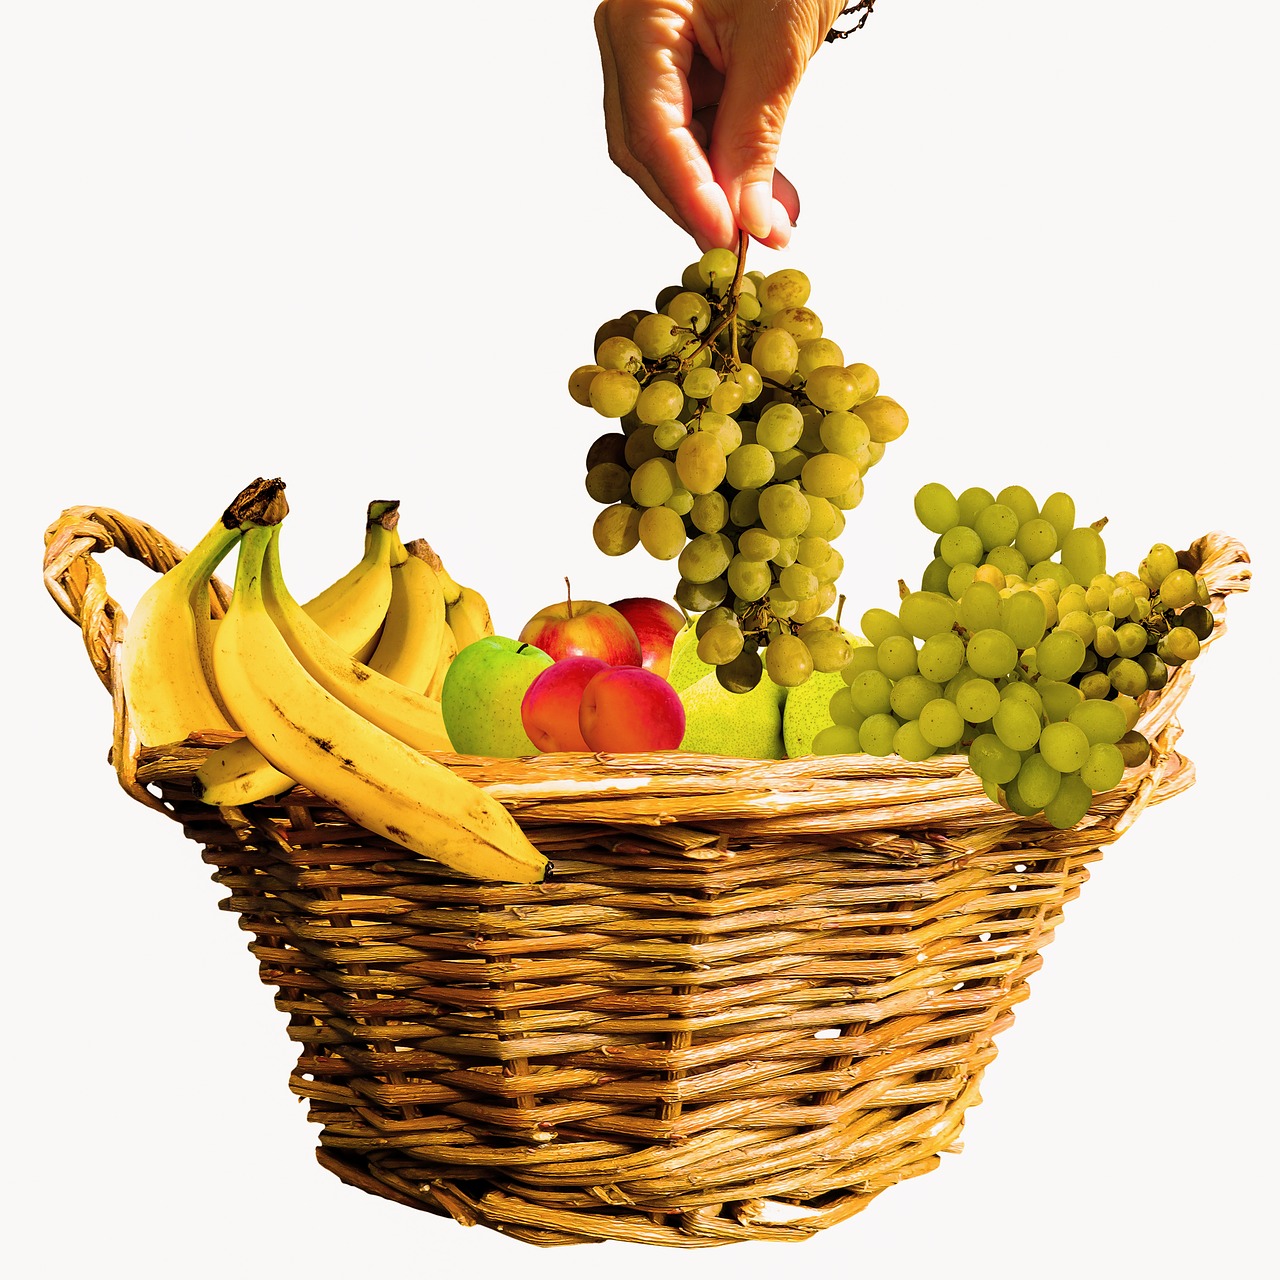 Valgyti, Maistas, Vaisiai, Vaisių Krepšys, Krepšelis, Vaisiai, Vitaminai, Veganas, Bananai, Vynuogės